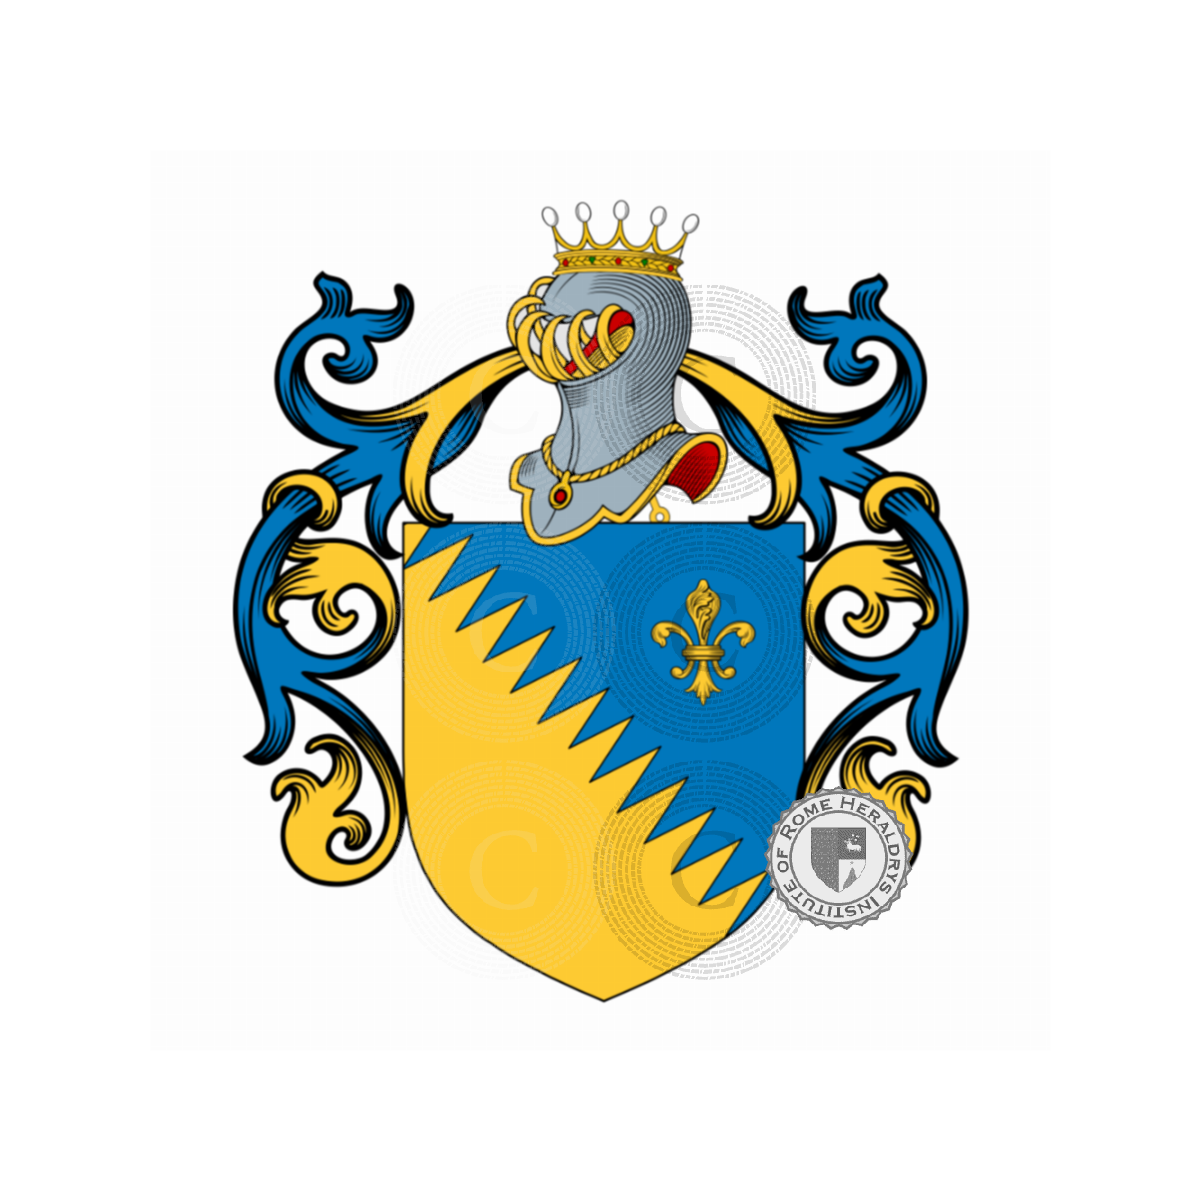 Wappen der FamilieLelli